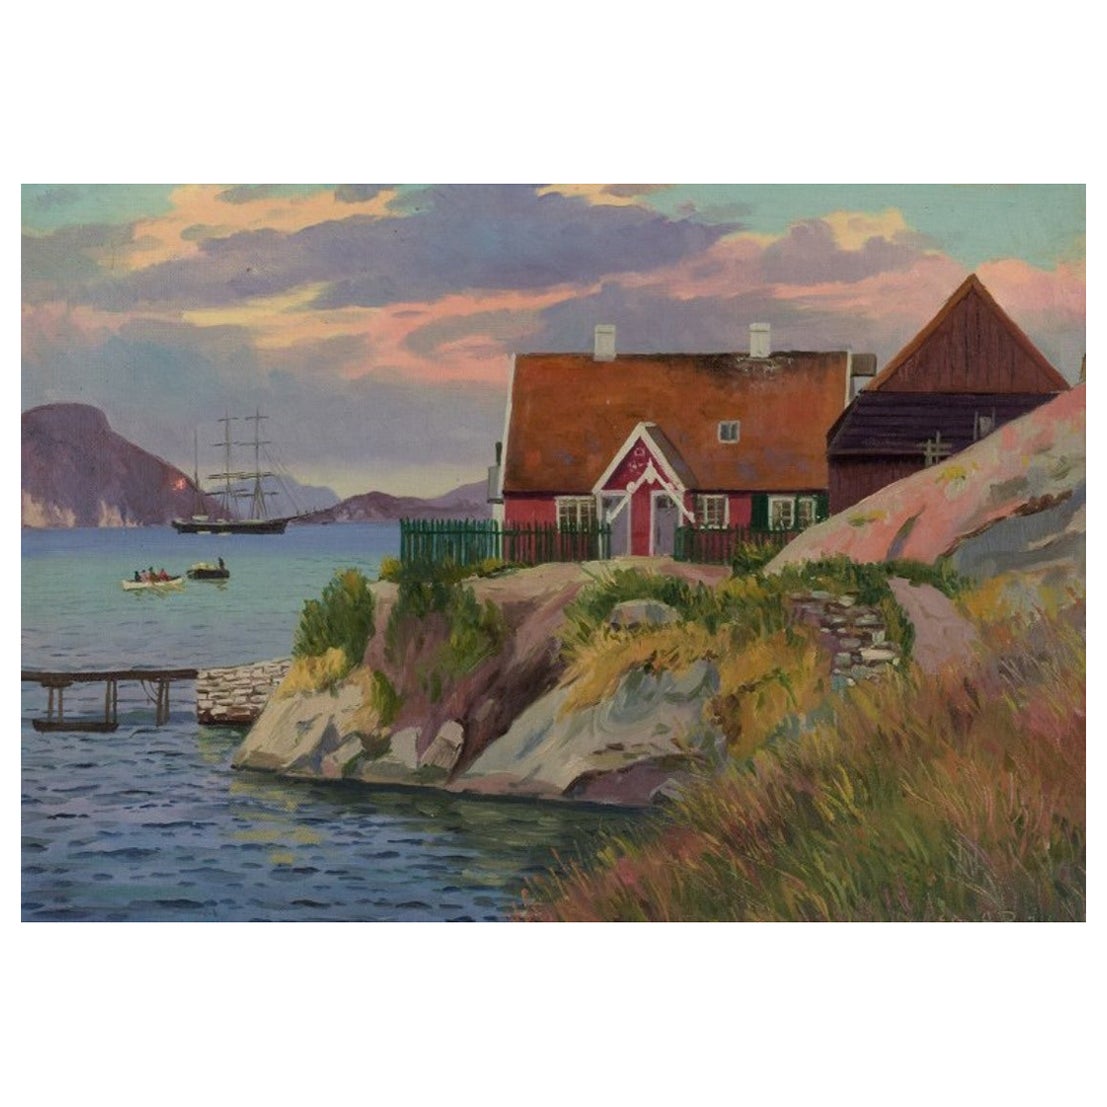 Emanuel Aage Petersen (1894-1948). Peinture à l'huile sur toile. Village groenlandais. 